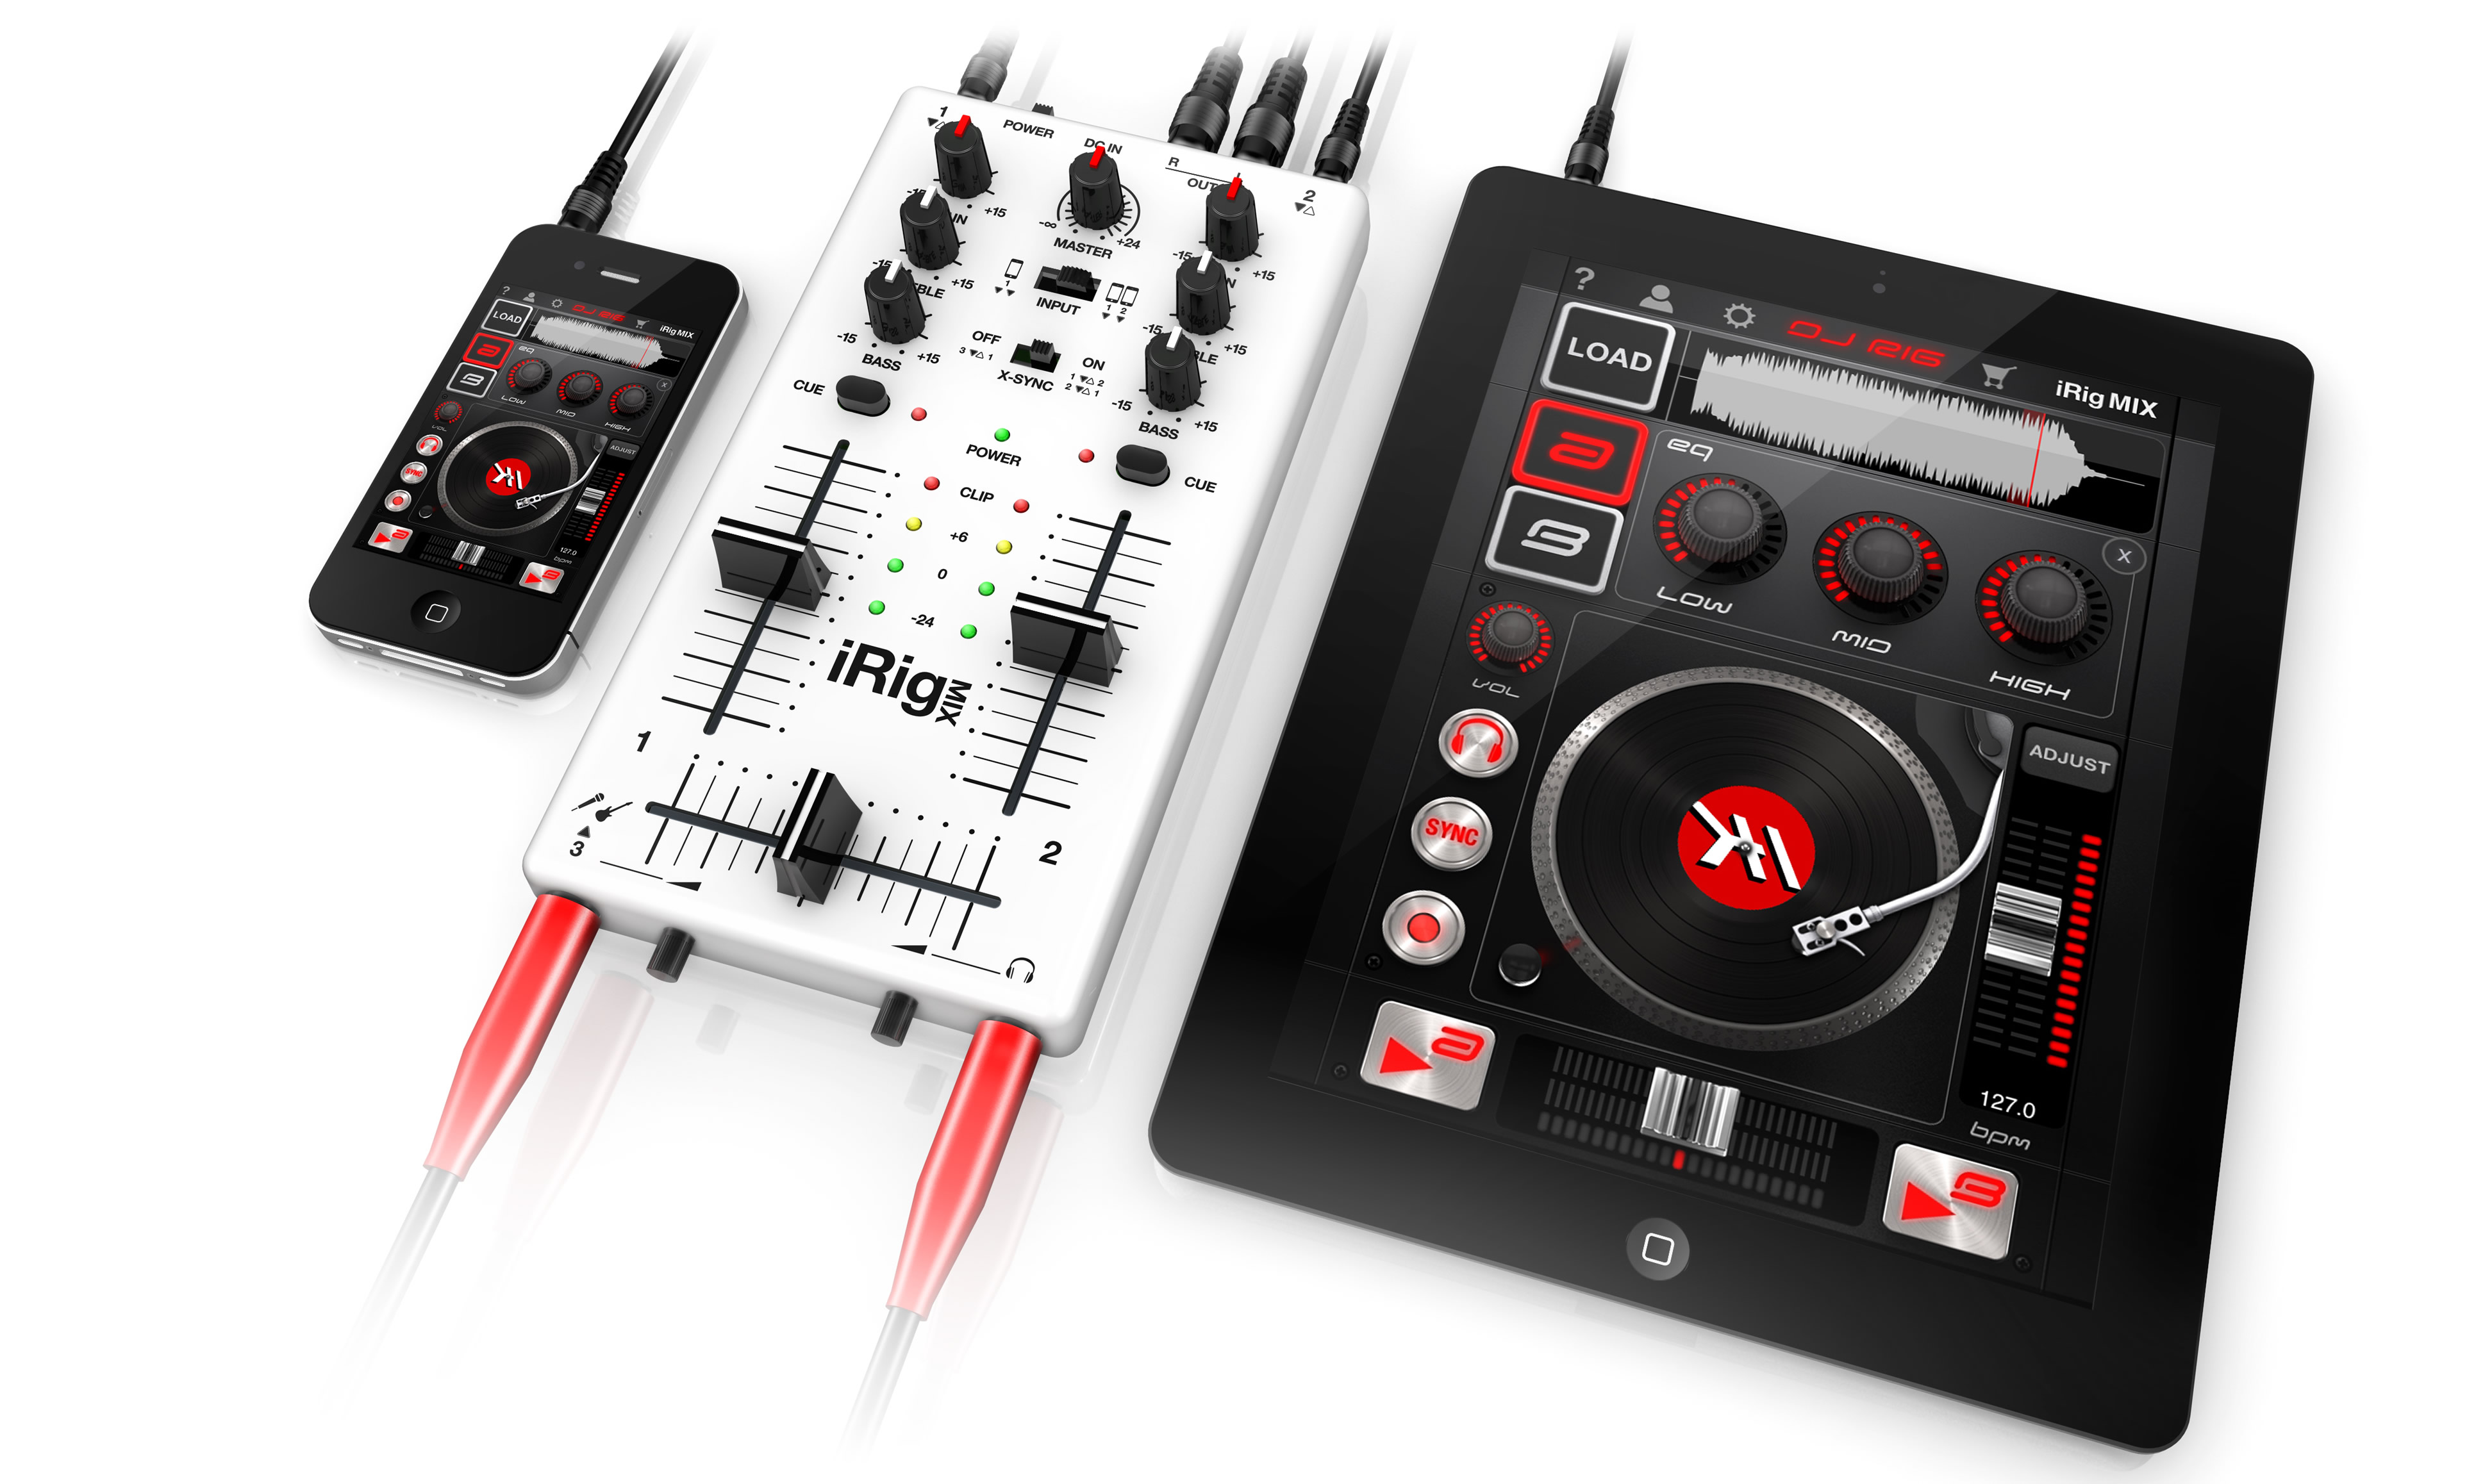 iRig MIX consola para mezclar tu música en iOS #CES2012